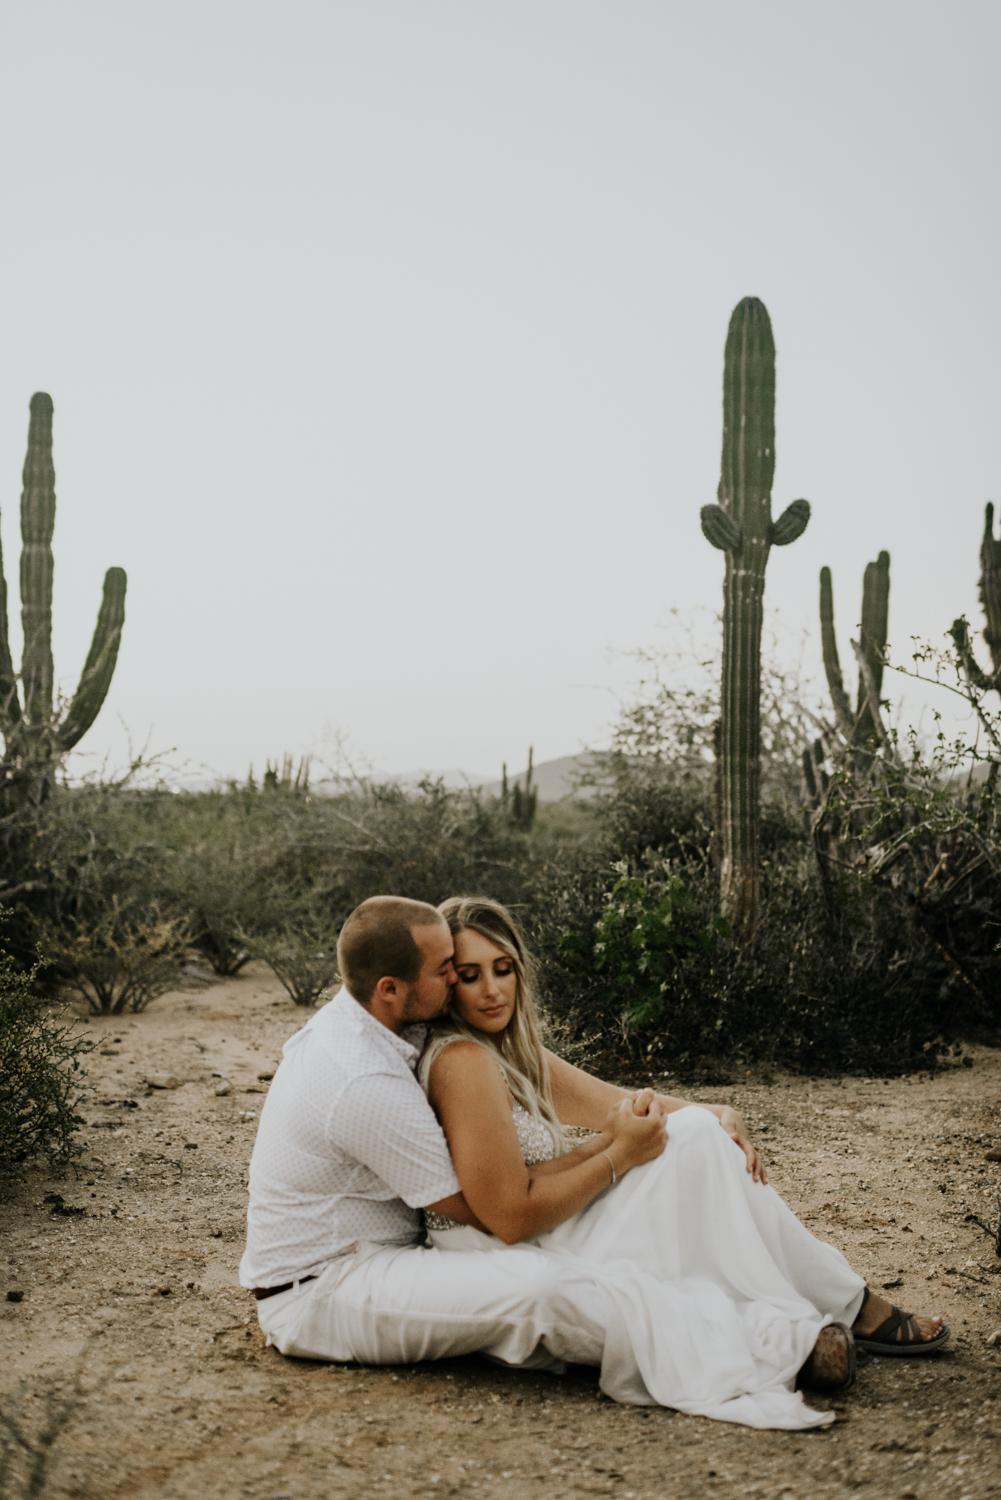  Intimate Destination Wedding Photos in Todos Santos, Baja California Sur, Mexico